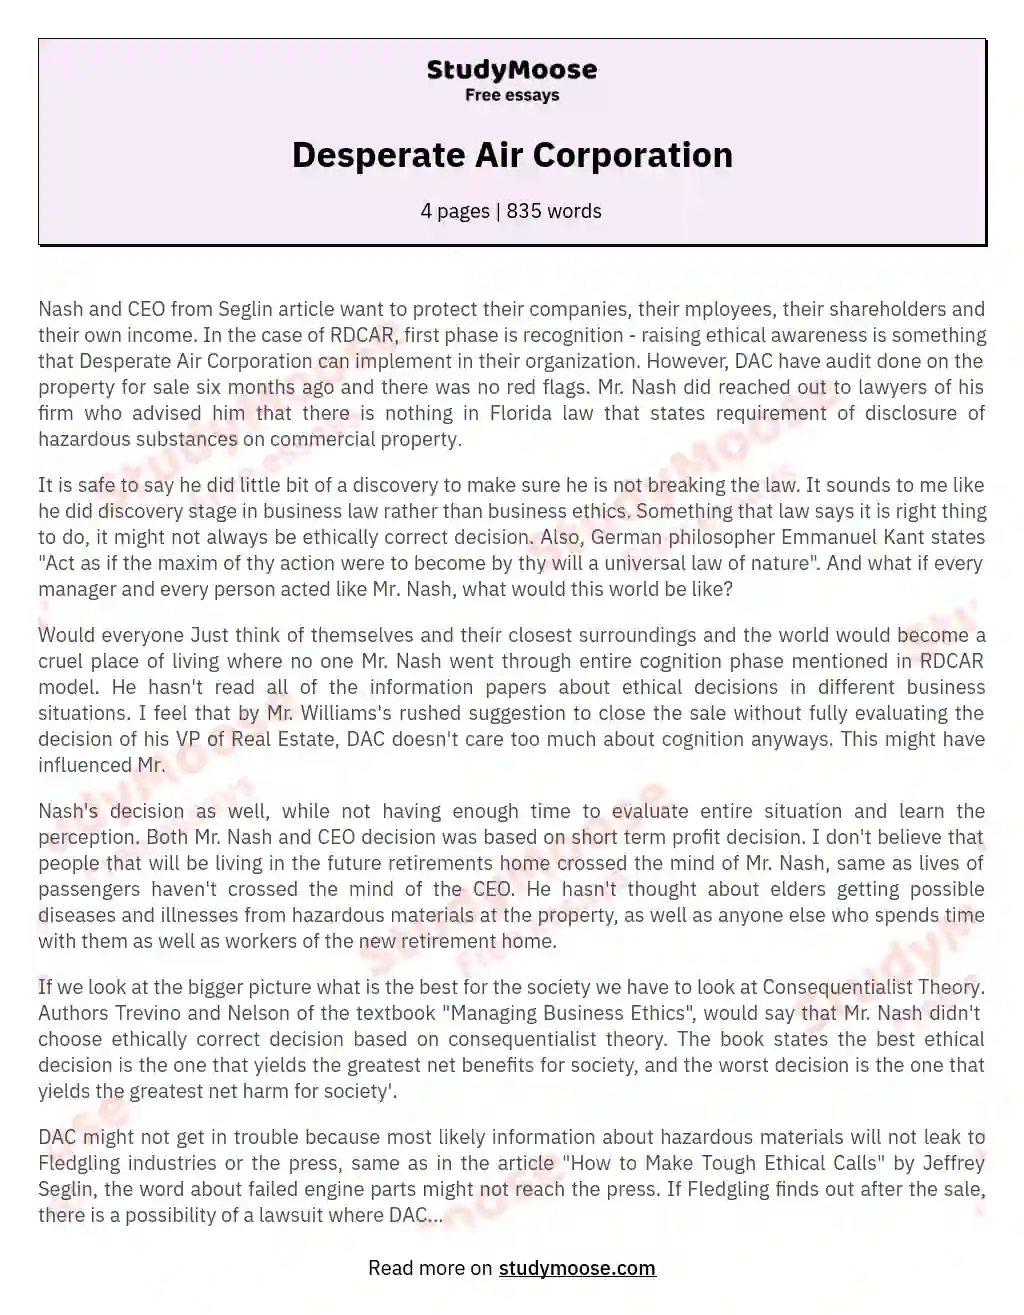 Desperate Air Corporation essay